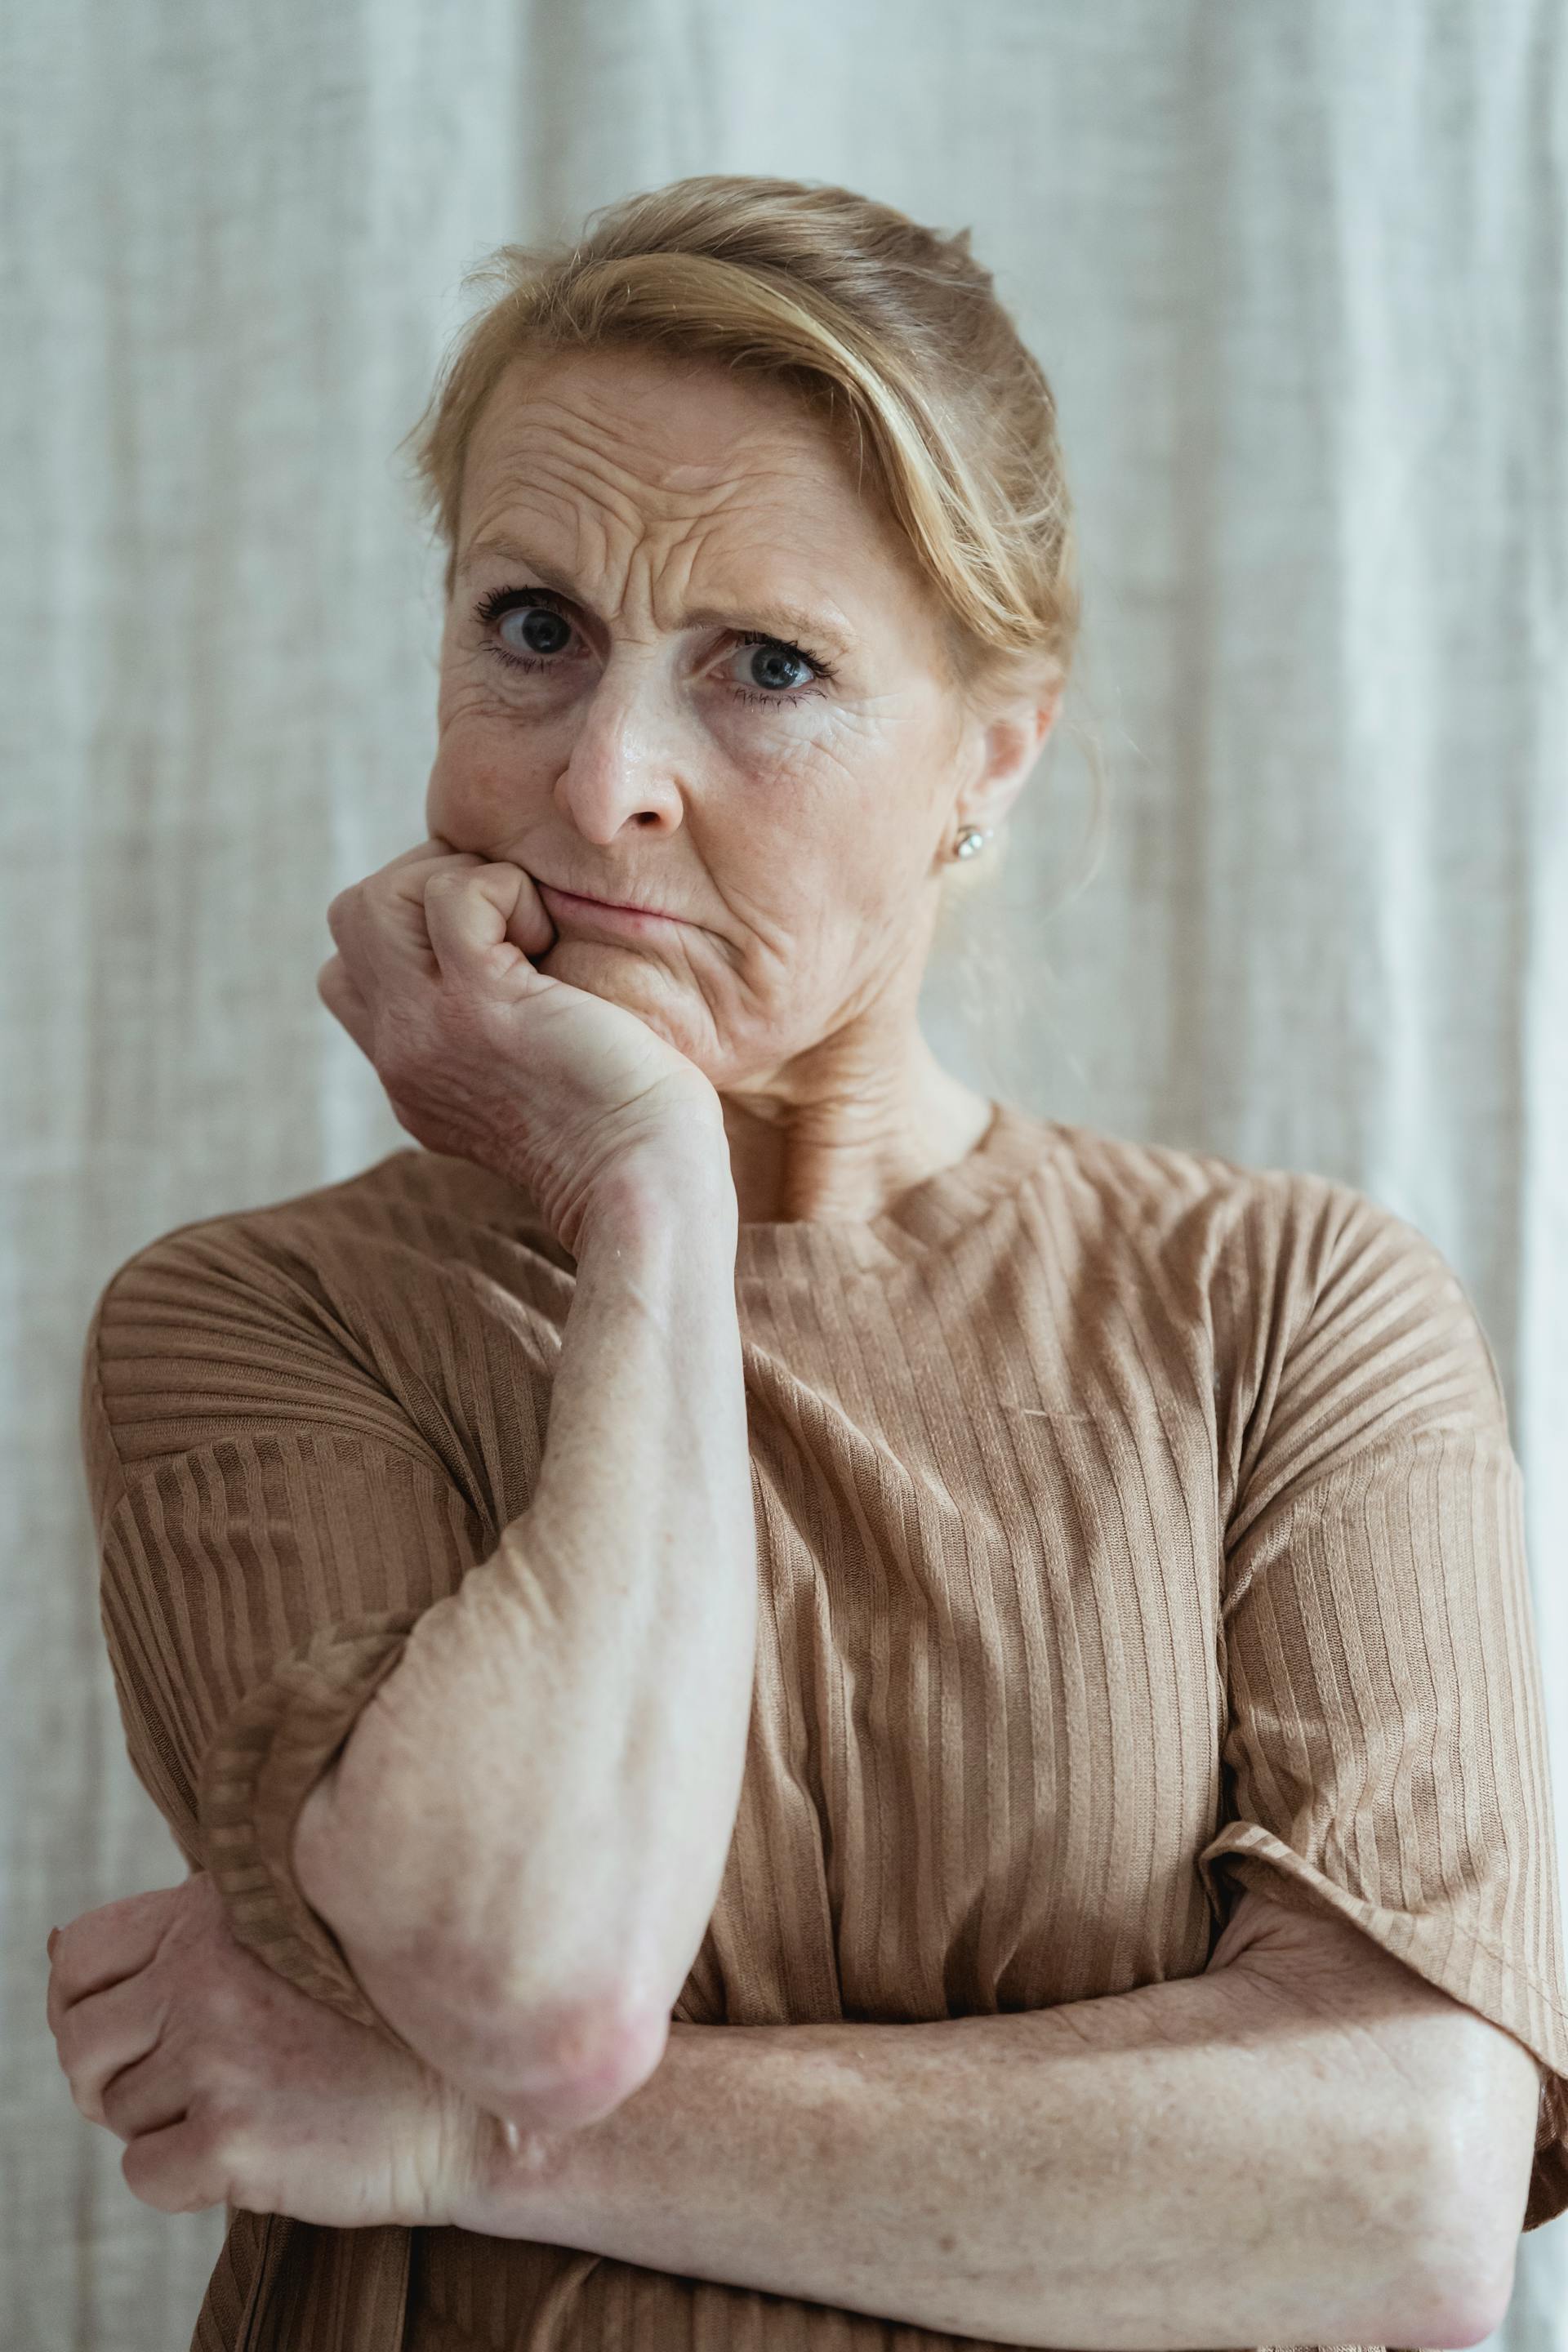 Ältere Frau mit einem besorgten Gesichtsausdruck | Quelle: Pexels